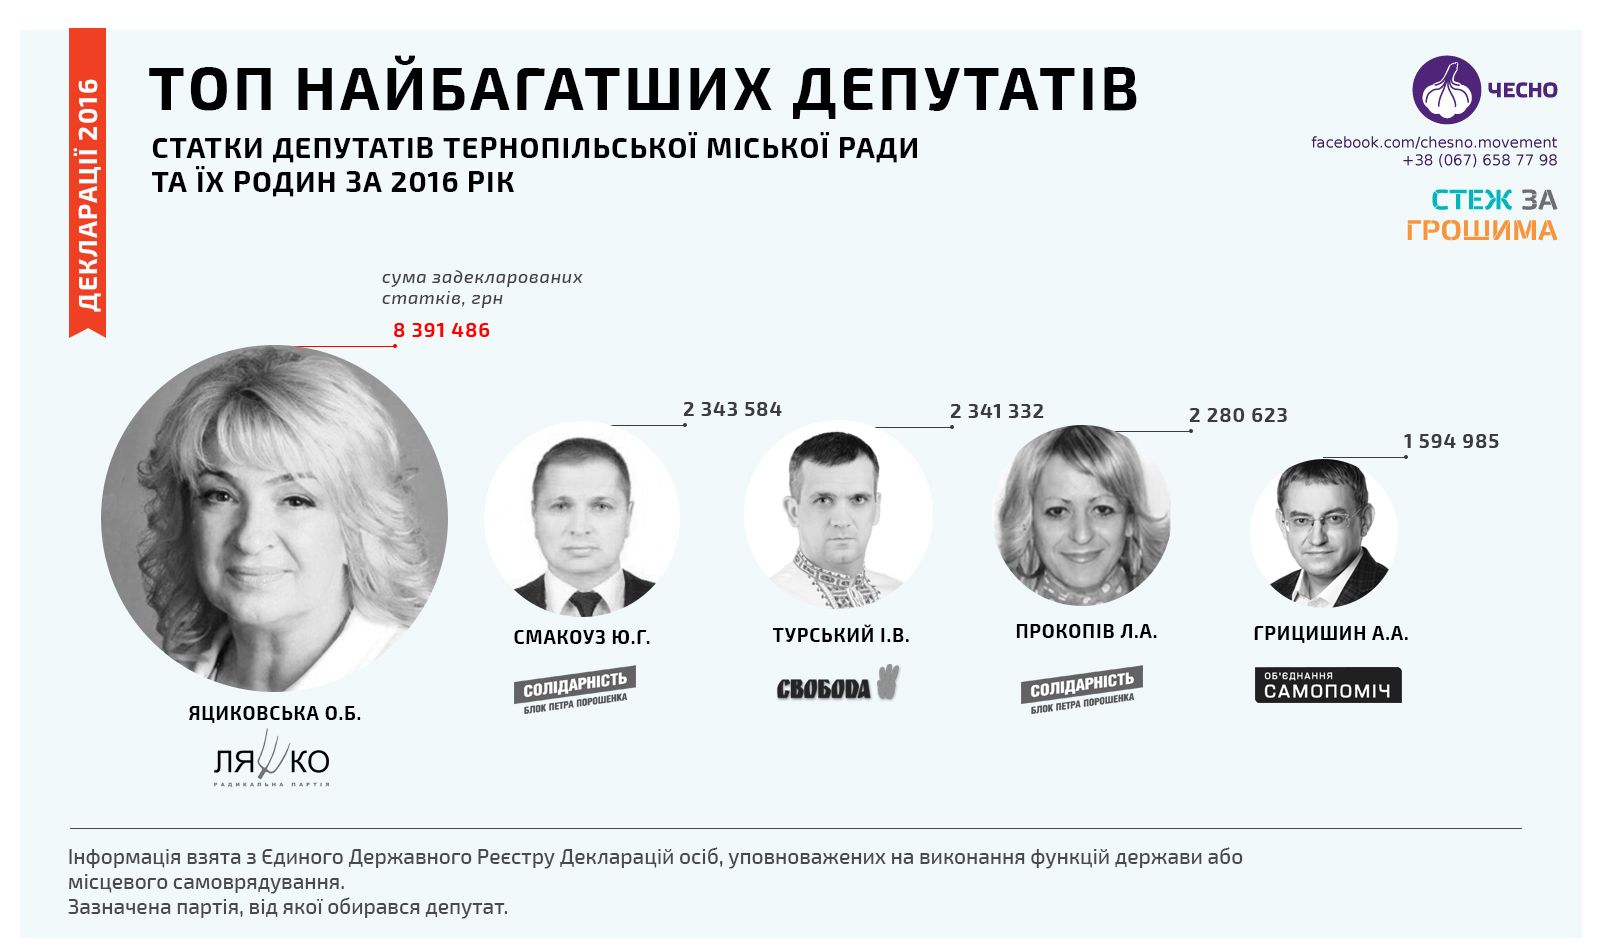 Найбагатші депутати Тернопільської міської ради